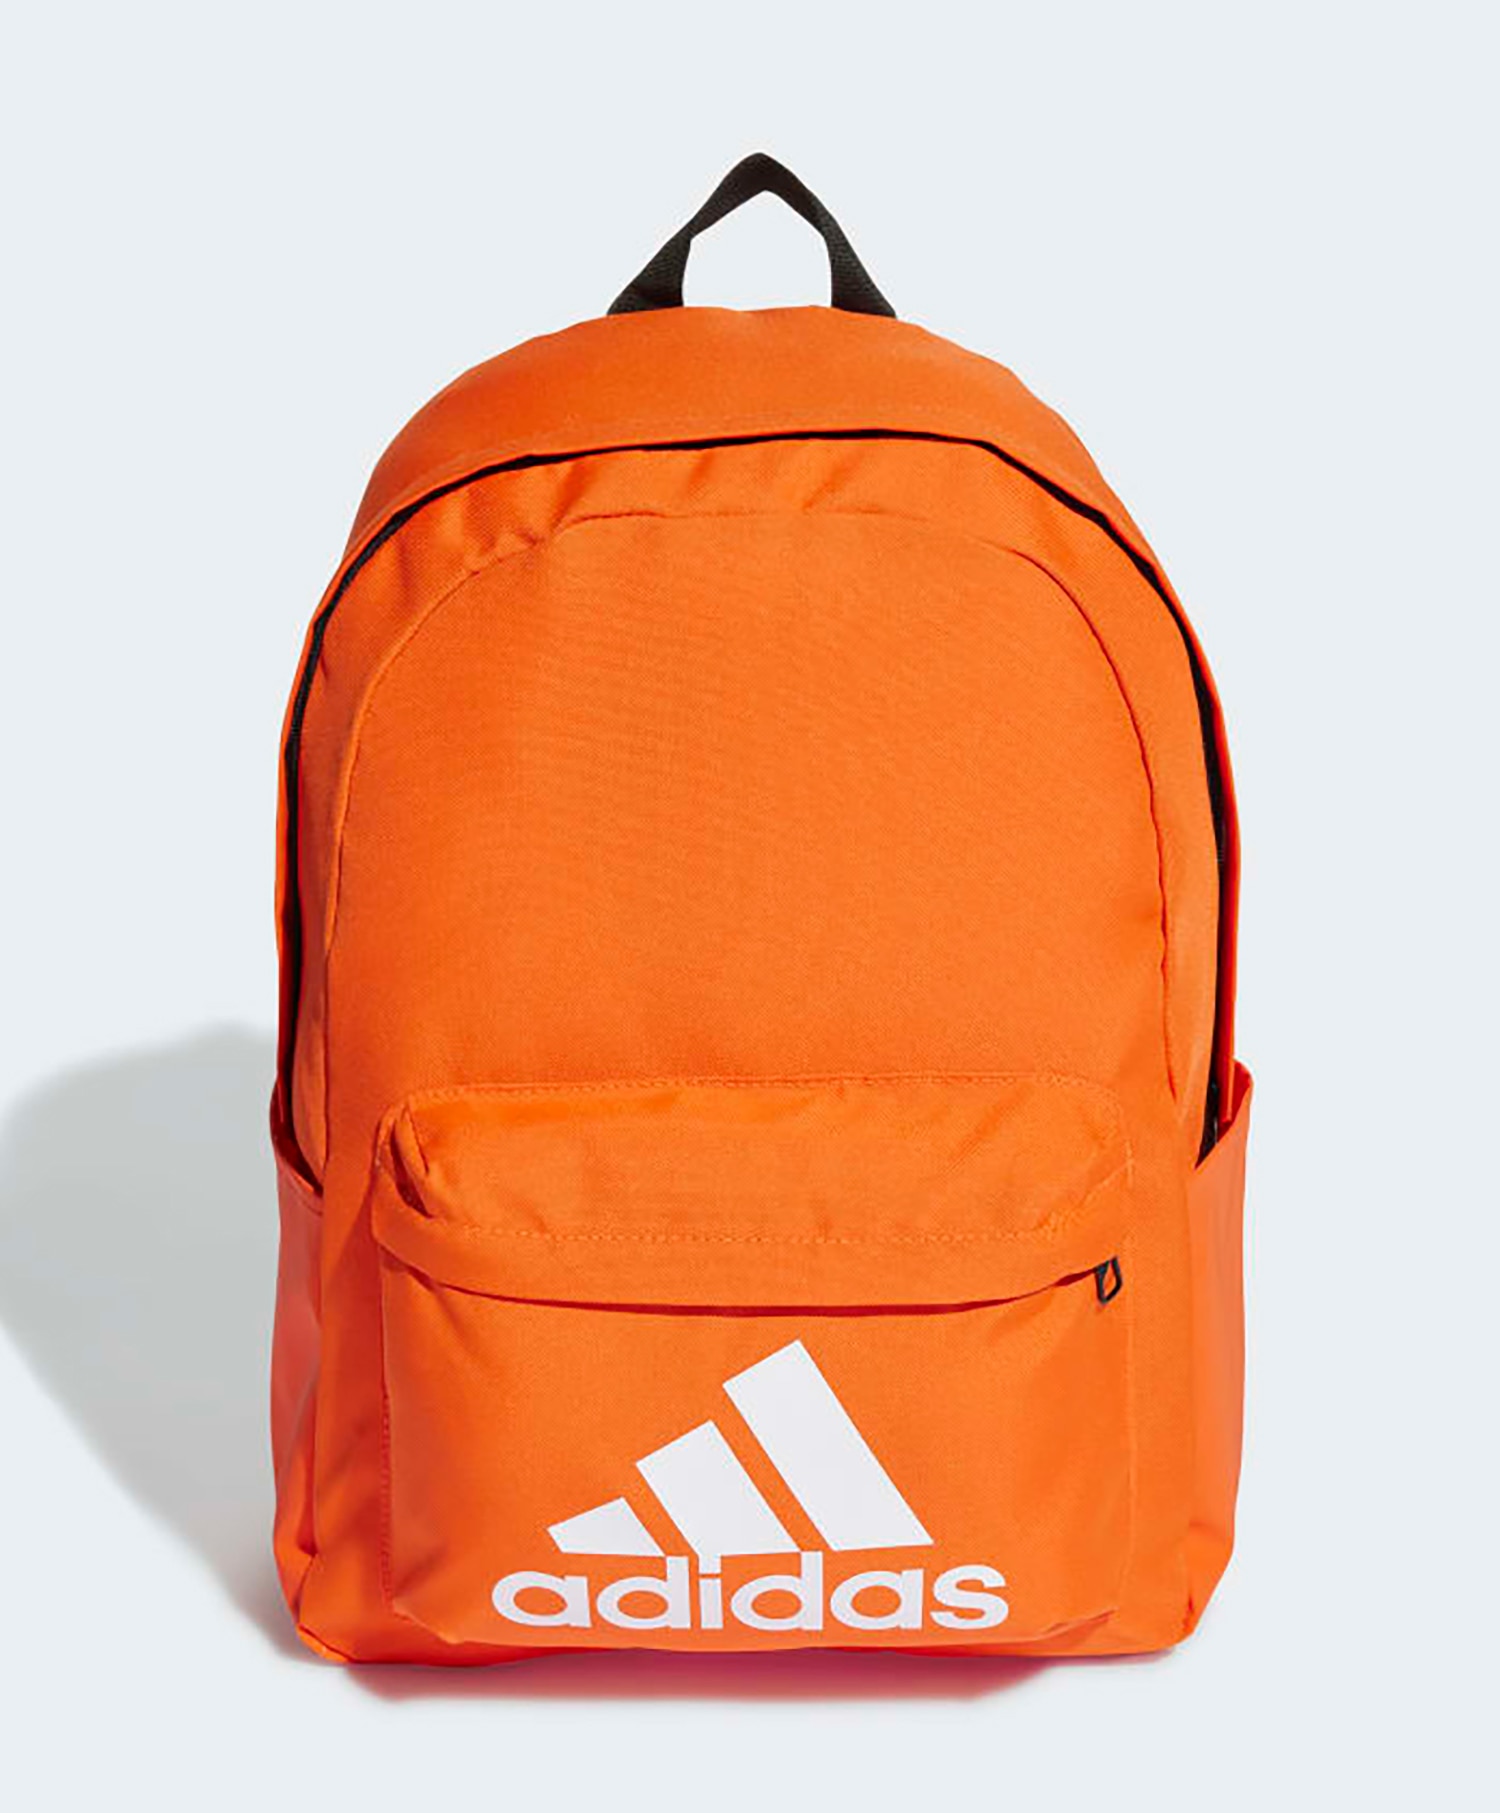 adidas BOS backpack